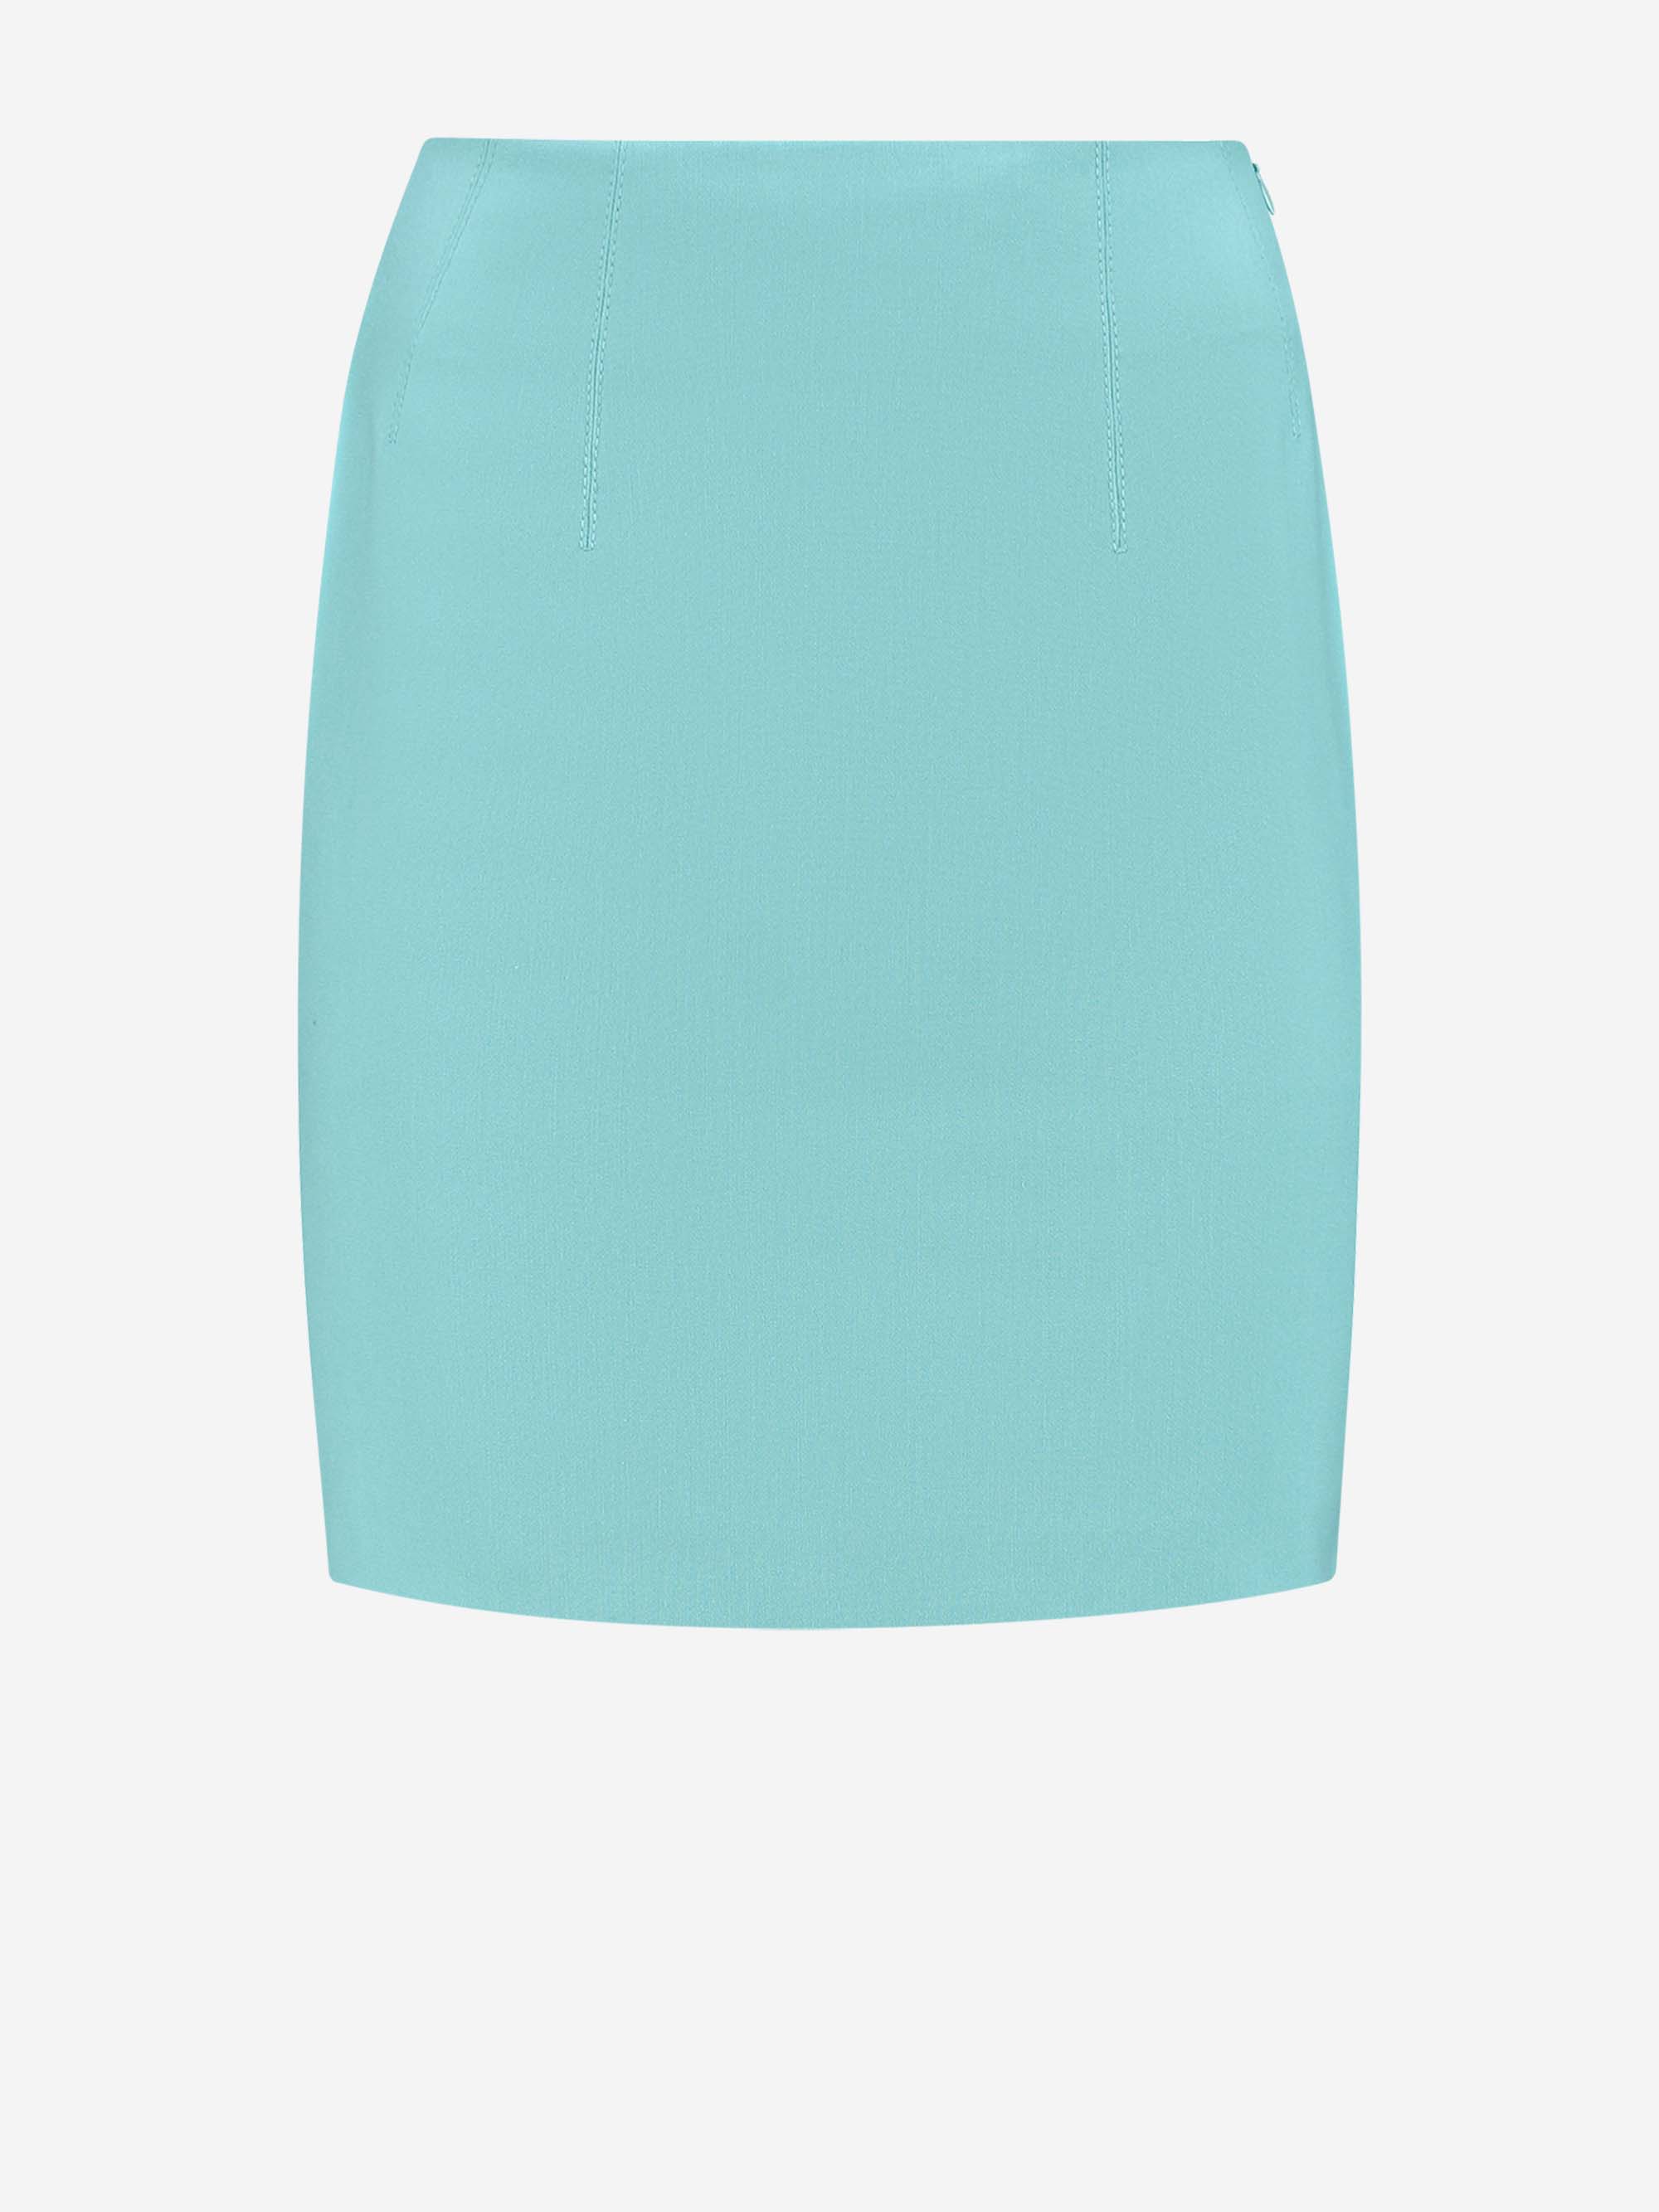 Regular skirt with zipper closure